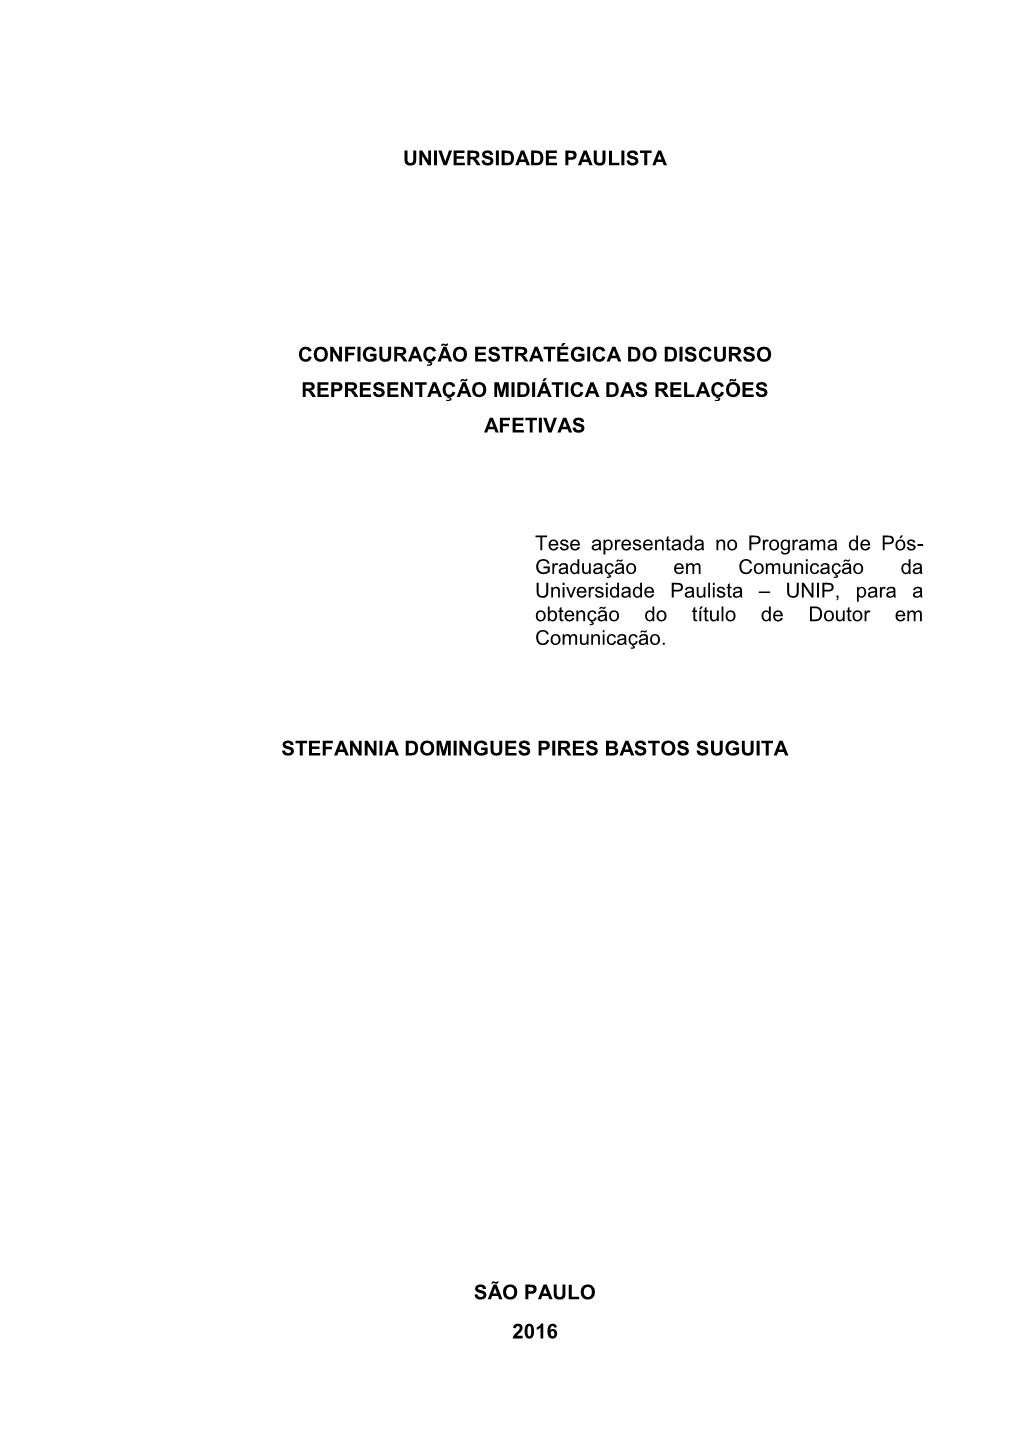 Tese Apresentada No Programa De Pós- Graduação Em Comunicação Da Universidade Paulista – UNIP, Para a Obtenção Do Título De Doutor Em Comunicação